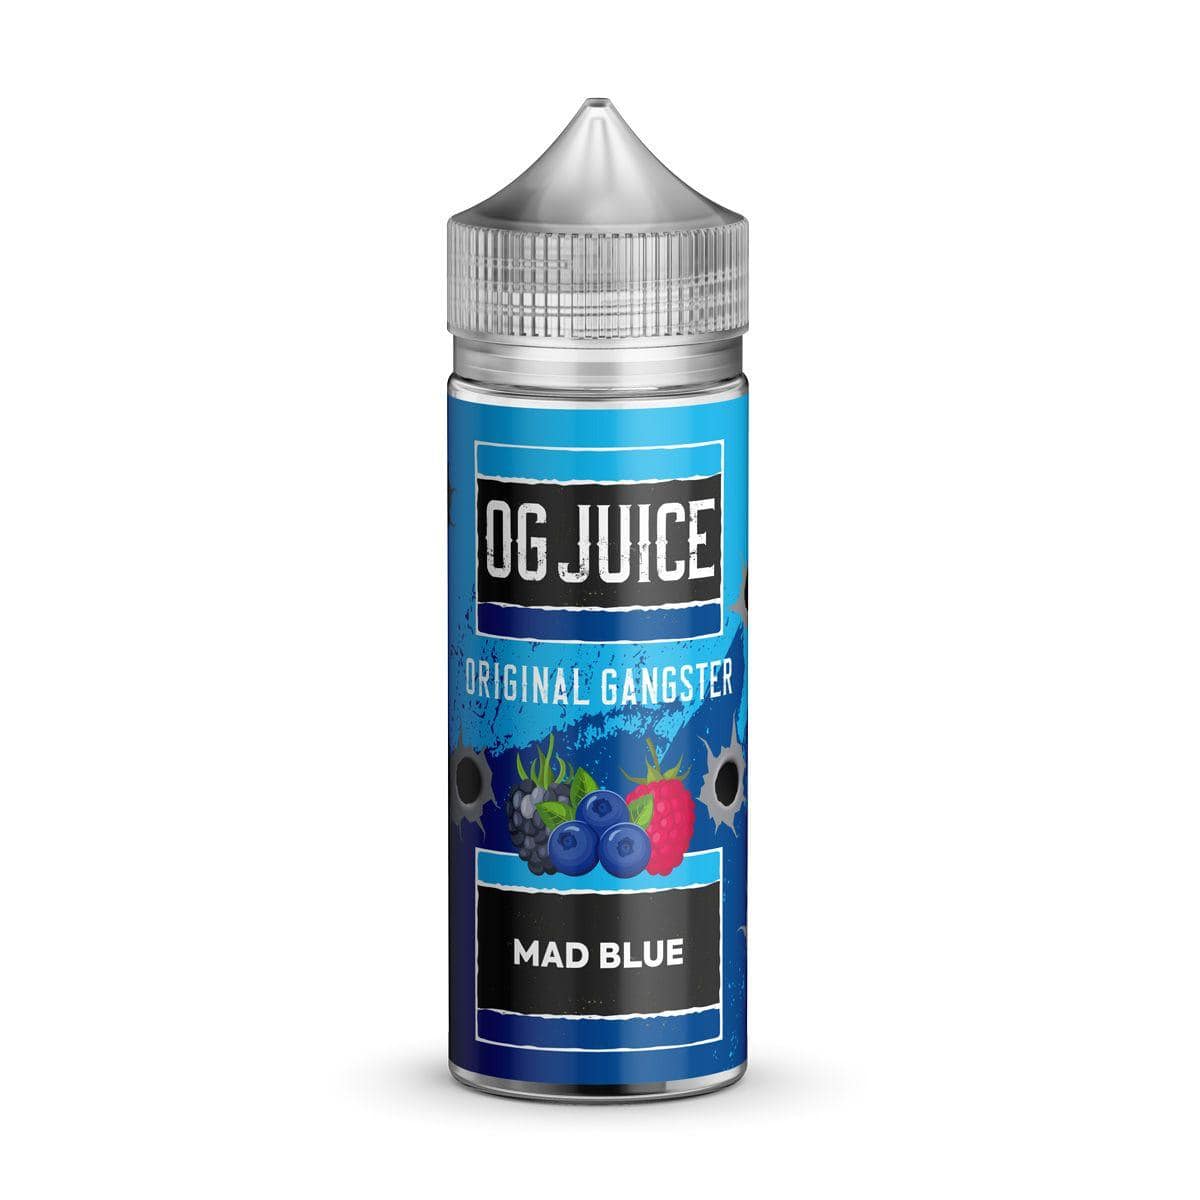 OG Juice Original Gangster - Mad Blue - 100ml E-liquid Shortfill - Mcr Vape Distro